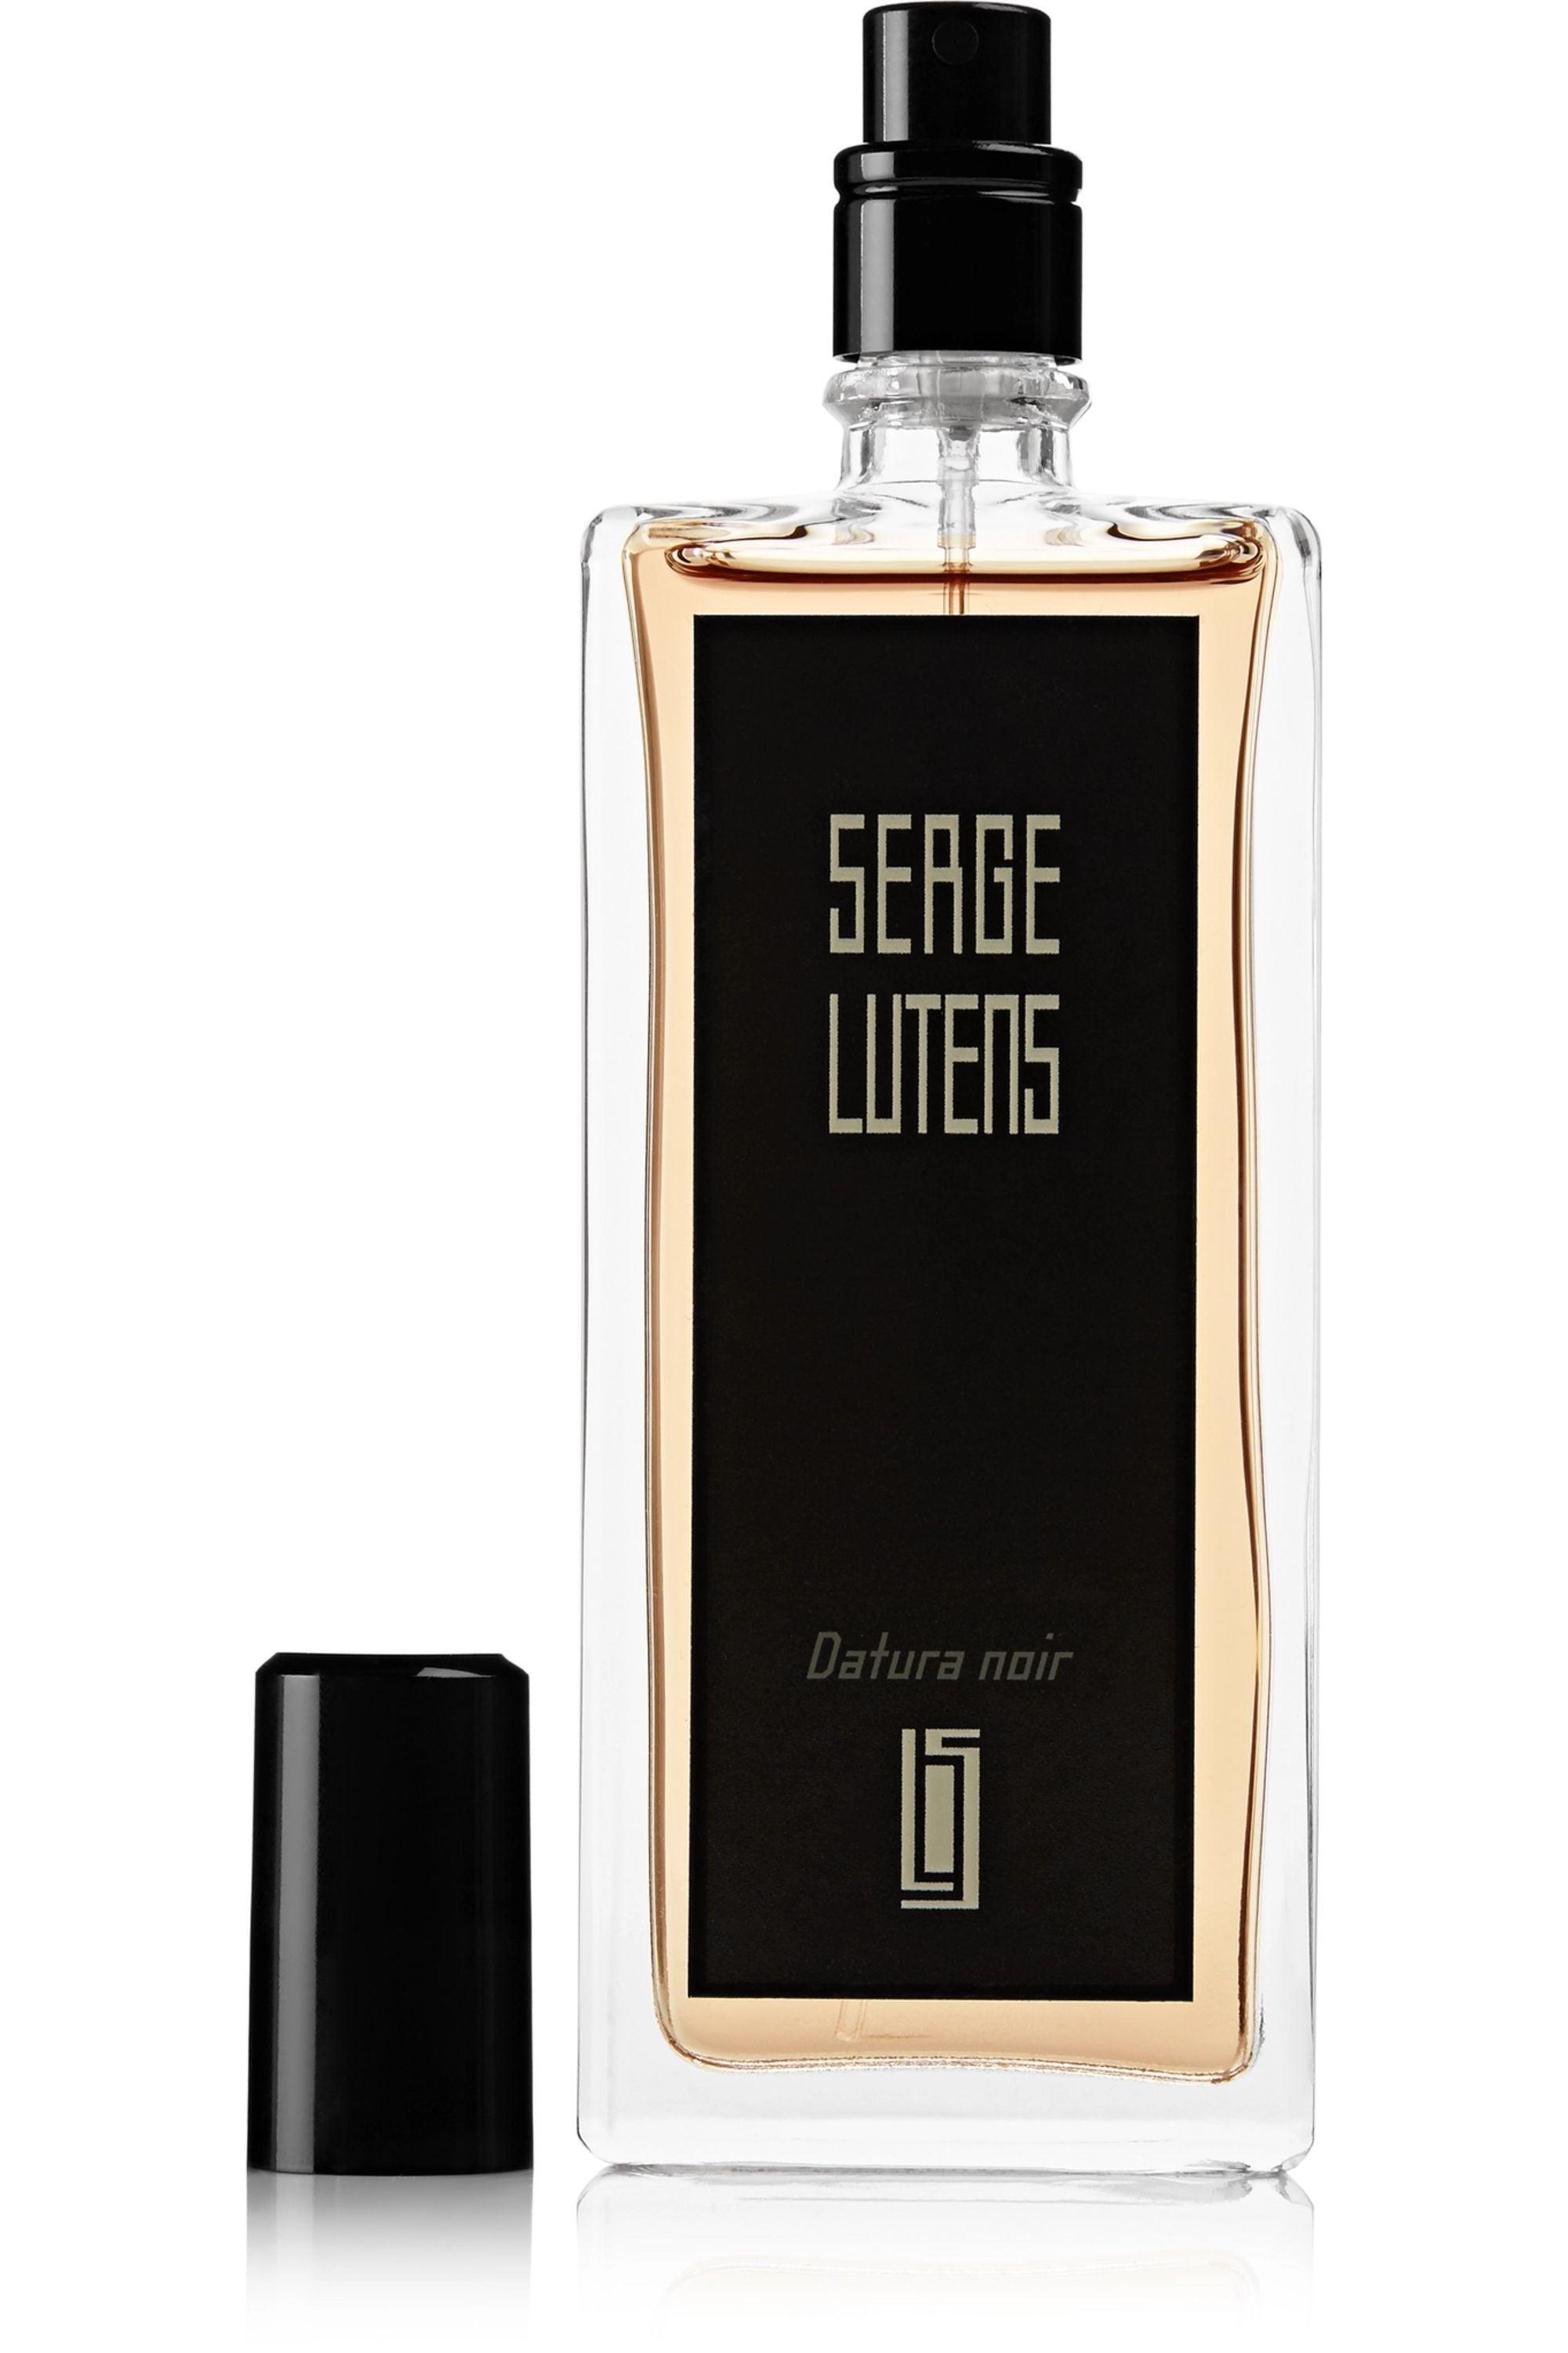 SERGE LUTENS Datura noir - Parfum Gallerie